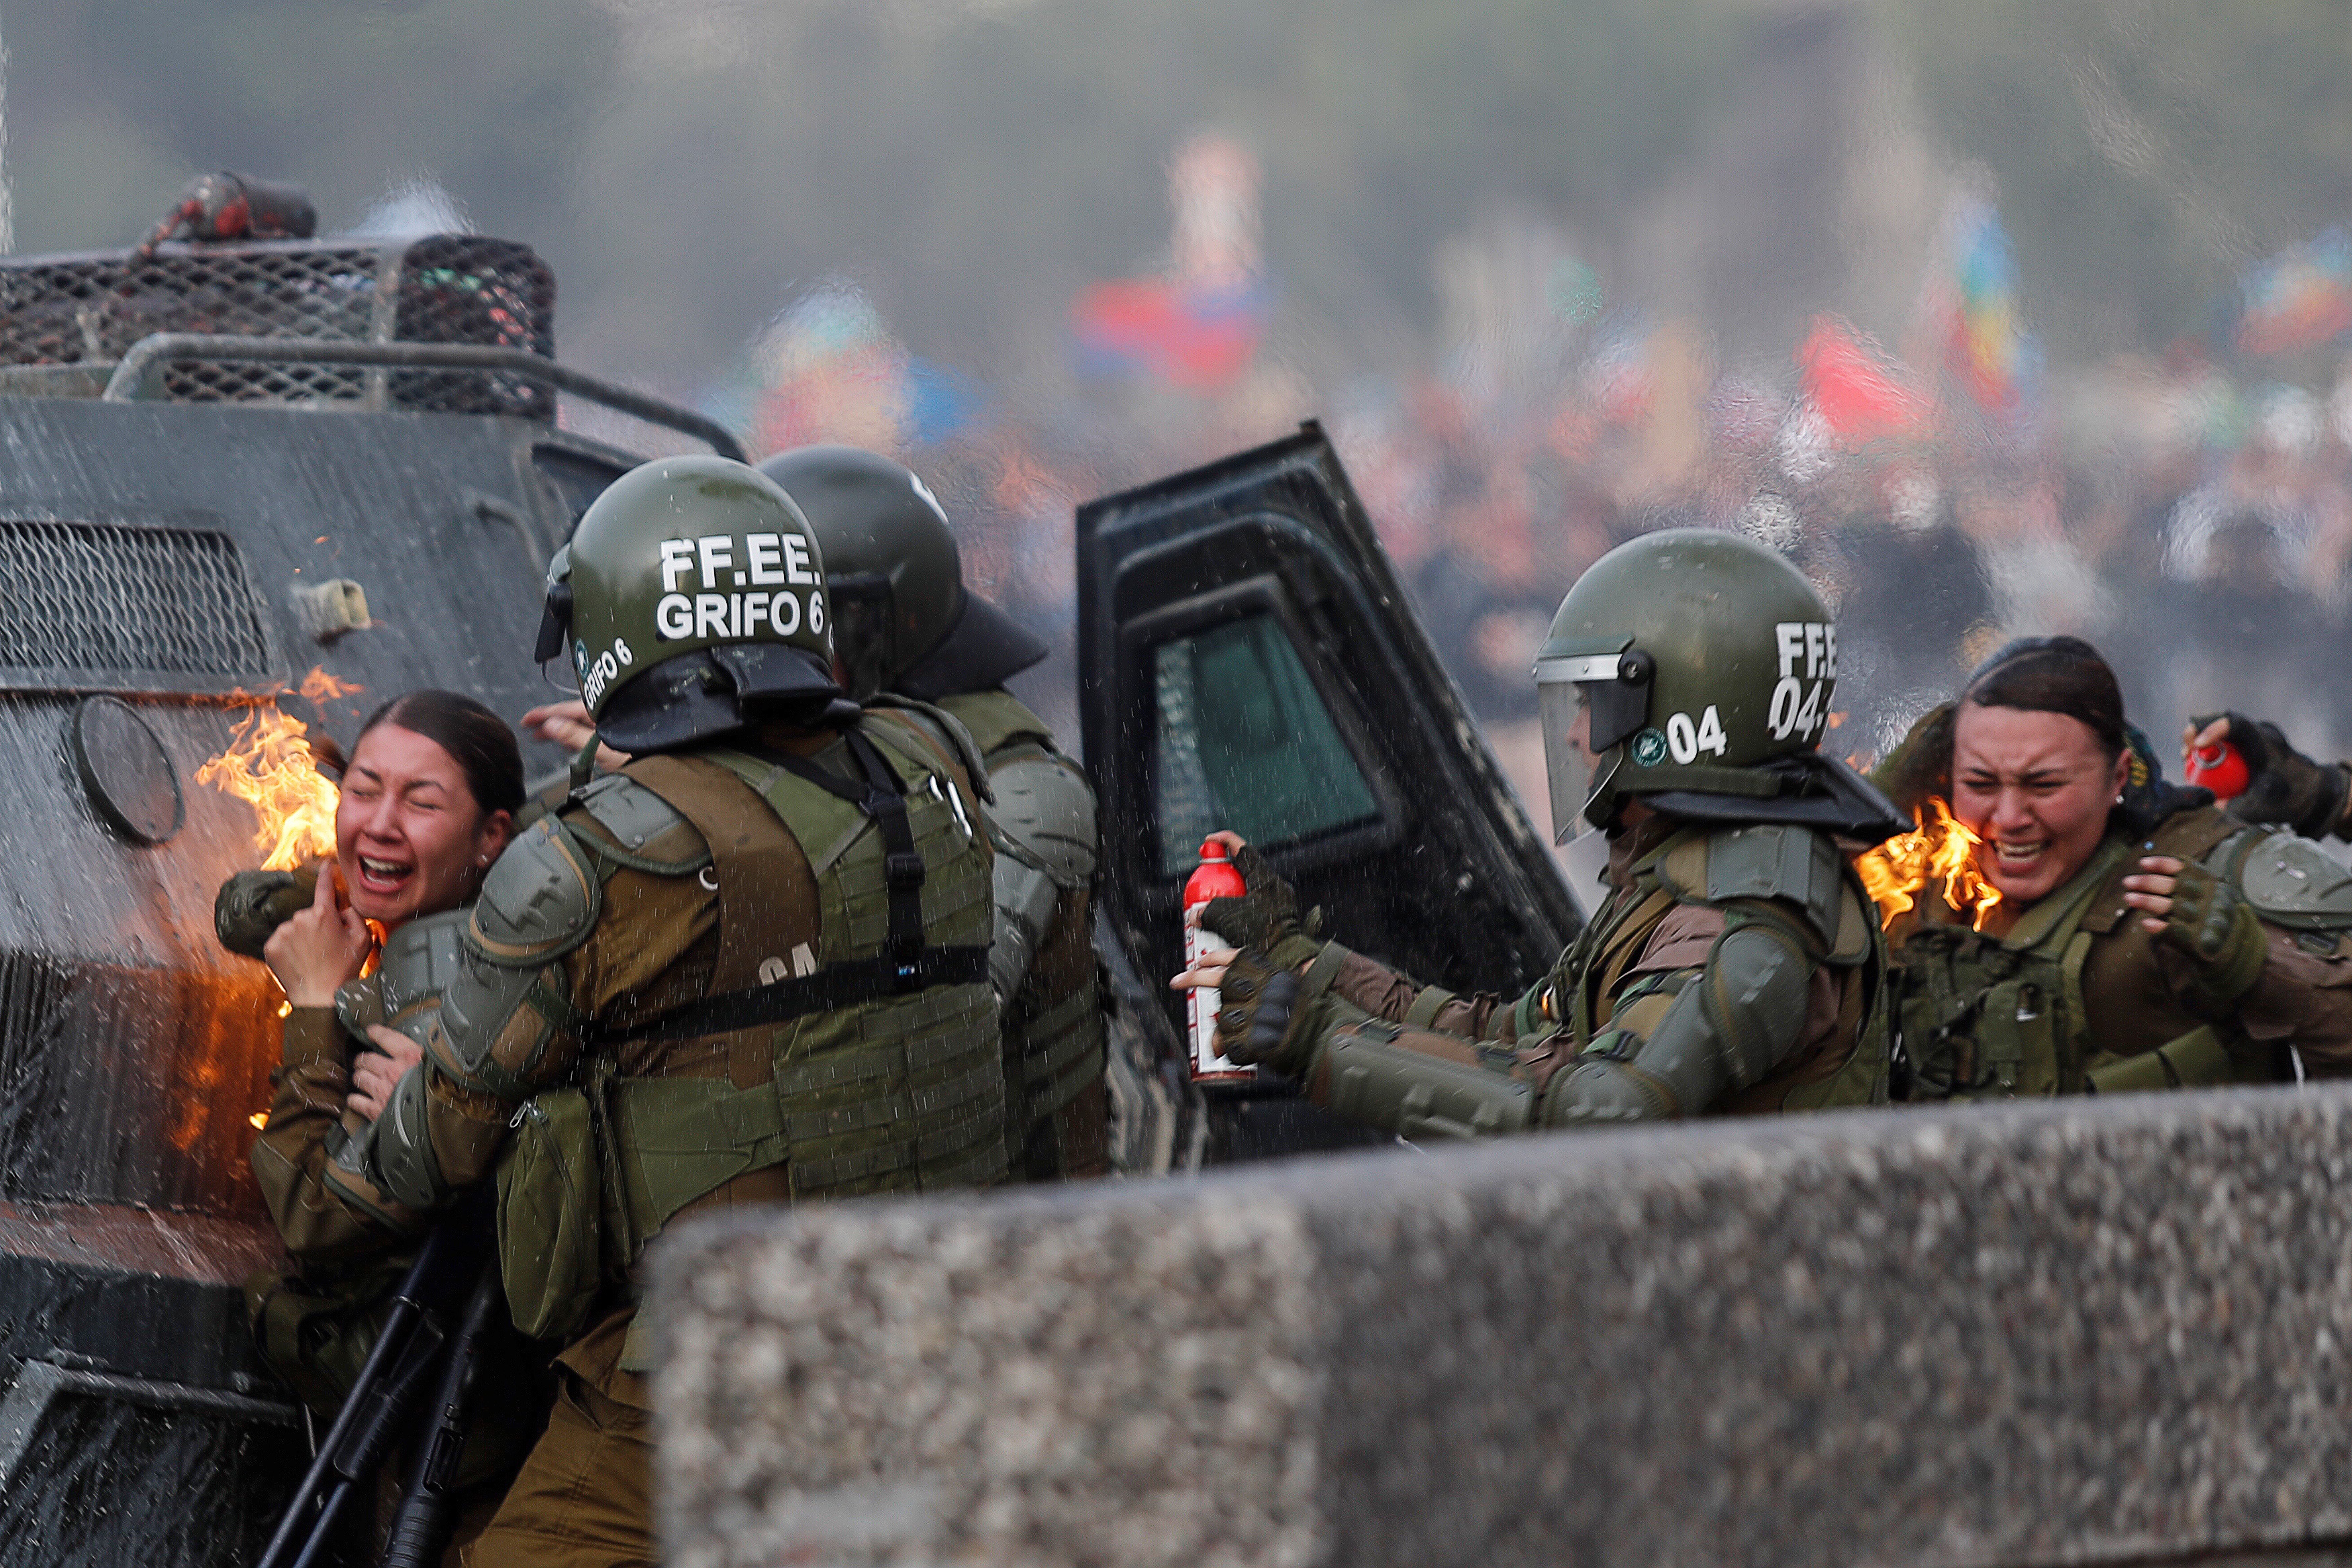 Χιλή: Δεν παραιτείται ο πρόεδρος Πινιέρα παρά τις αιματηρές διαδηλώσεις!